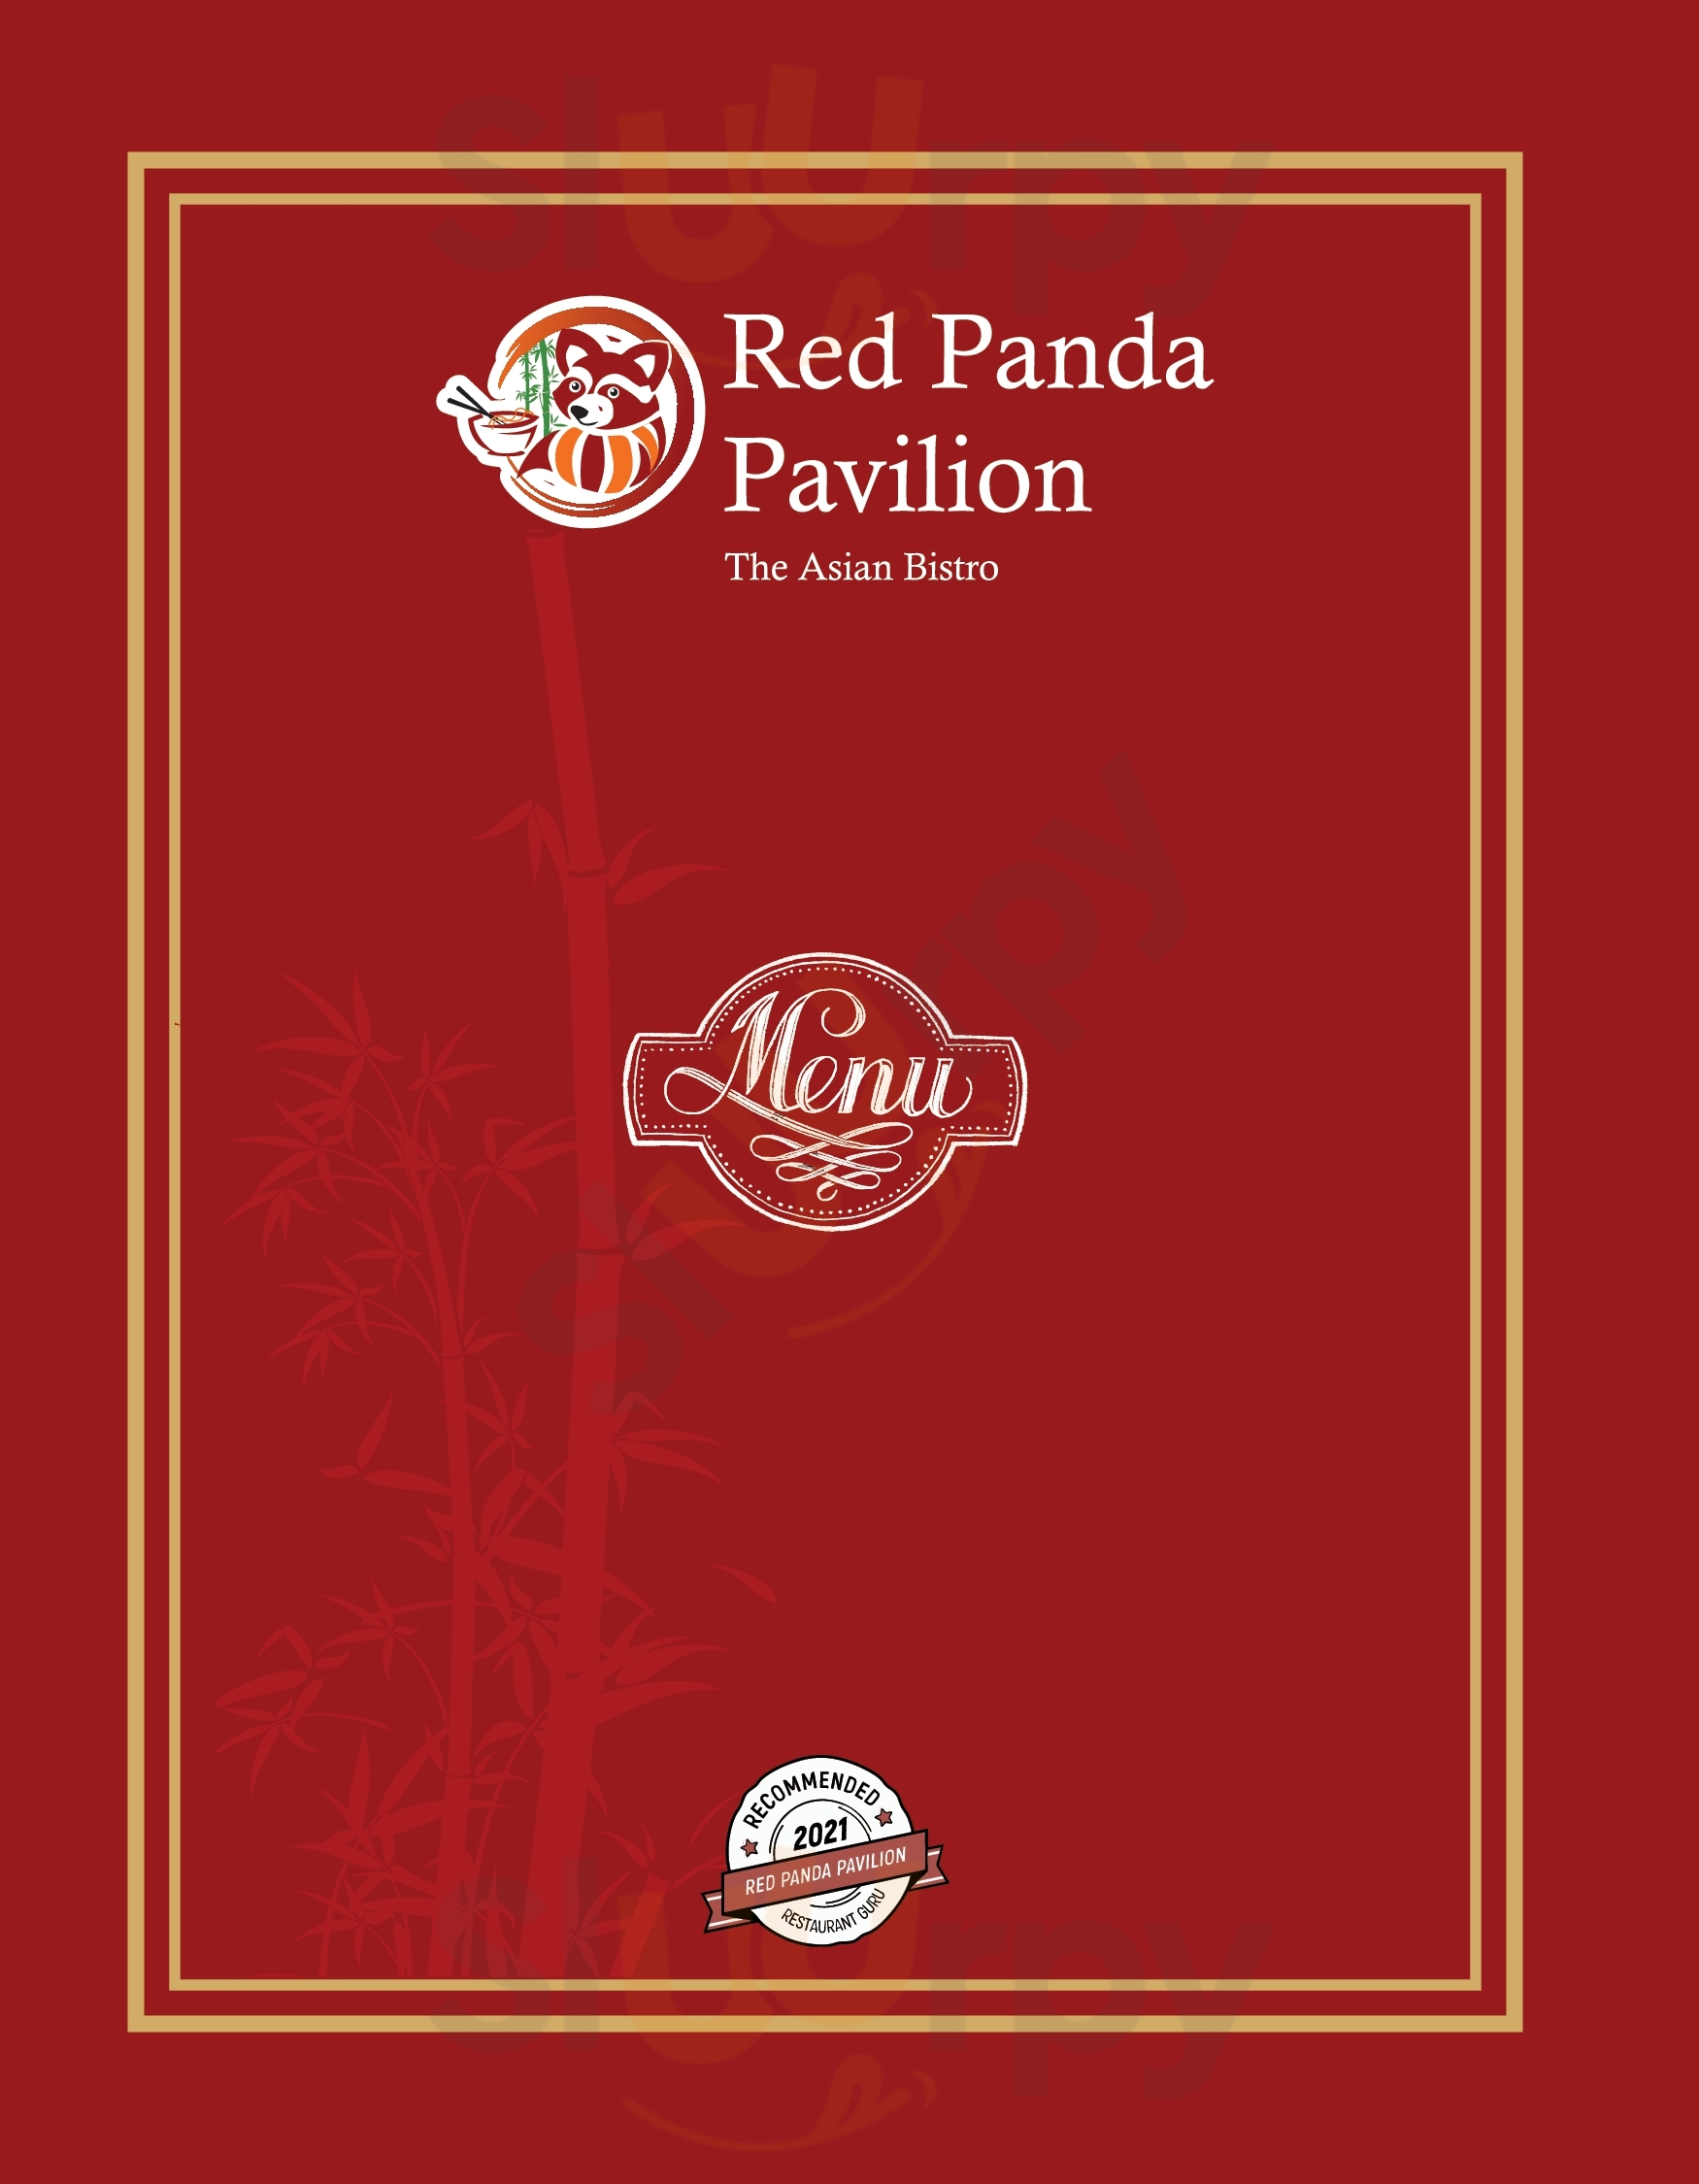 Red Panda Pavilion Mississauga Menu - 1